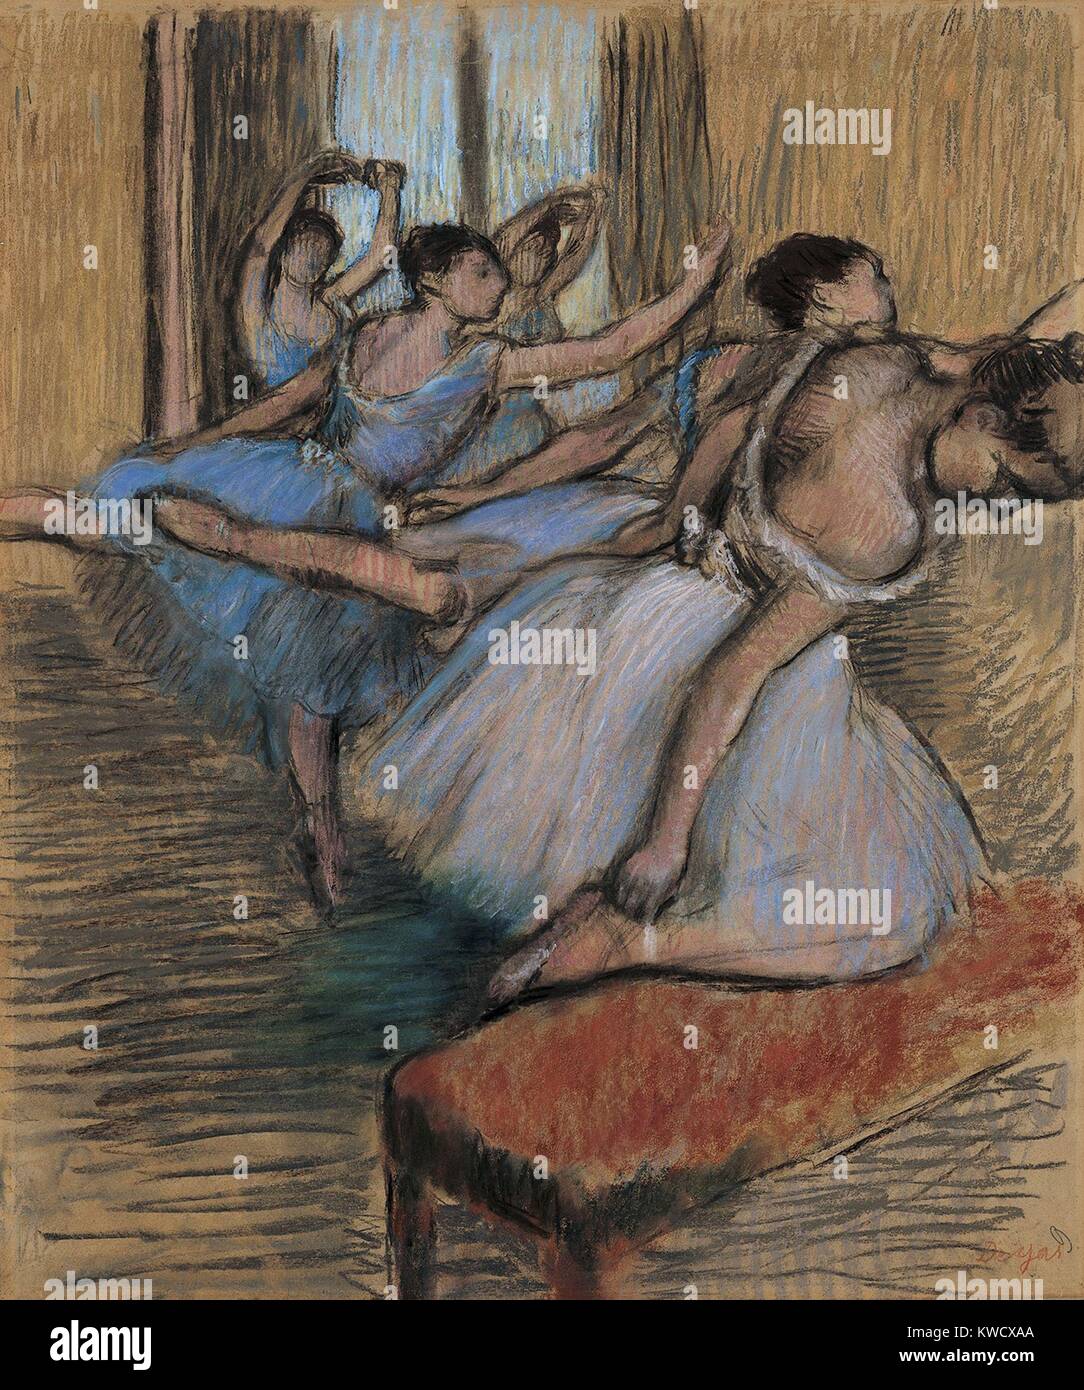 Die Tänzer, von Edgar Degas, 1900, französischer Impressionisten zeichnen, Pastell und Kohle auf Papier. Degas erklärt Kunsthändler Ambroise Vollard, der Tanz ist für mich ein Vorwand für die Malerei Hübsche Kostüme und Rendering Bewegung (BSLOC 2017 3 111) Stockfoto